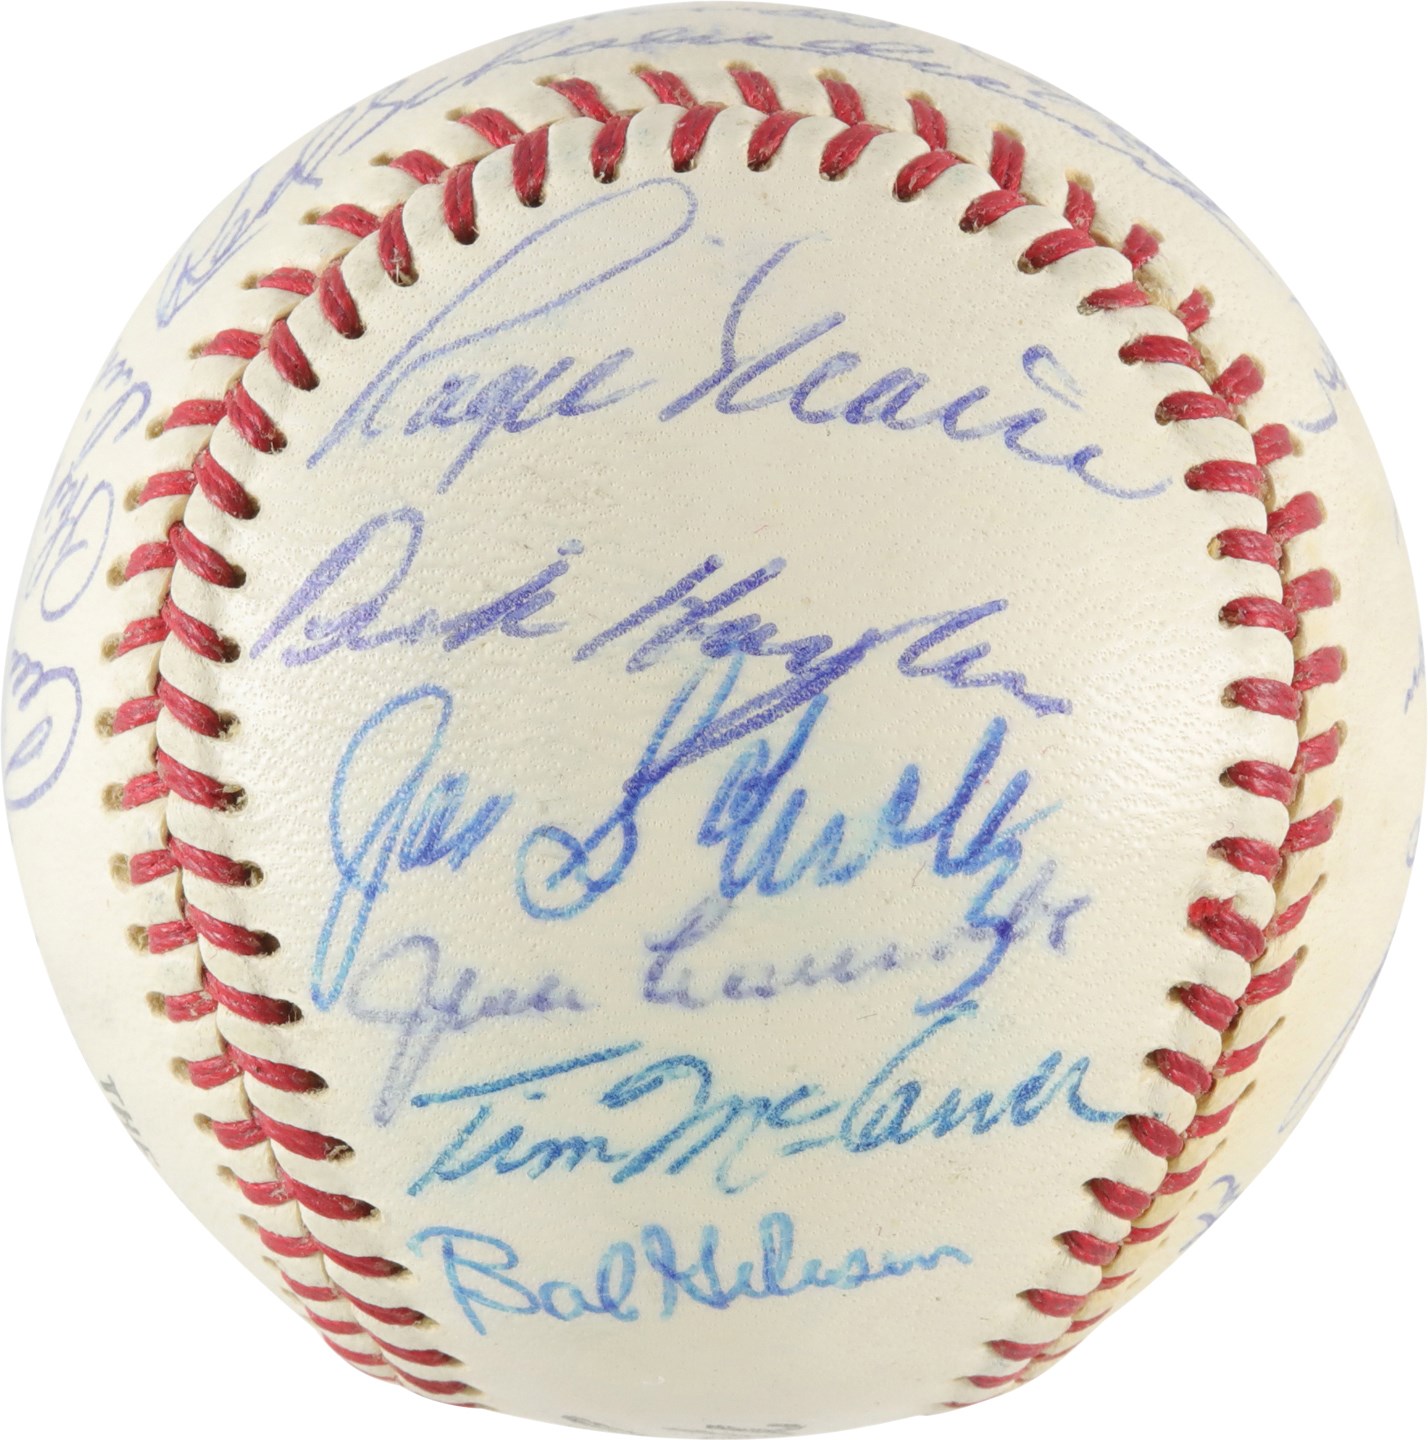 Baseball Autographs - High Grade 1967 World Champion St. Louis Cardinals Team-Signed Baseball (PSA)